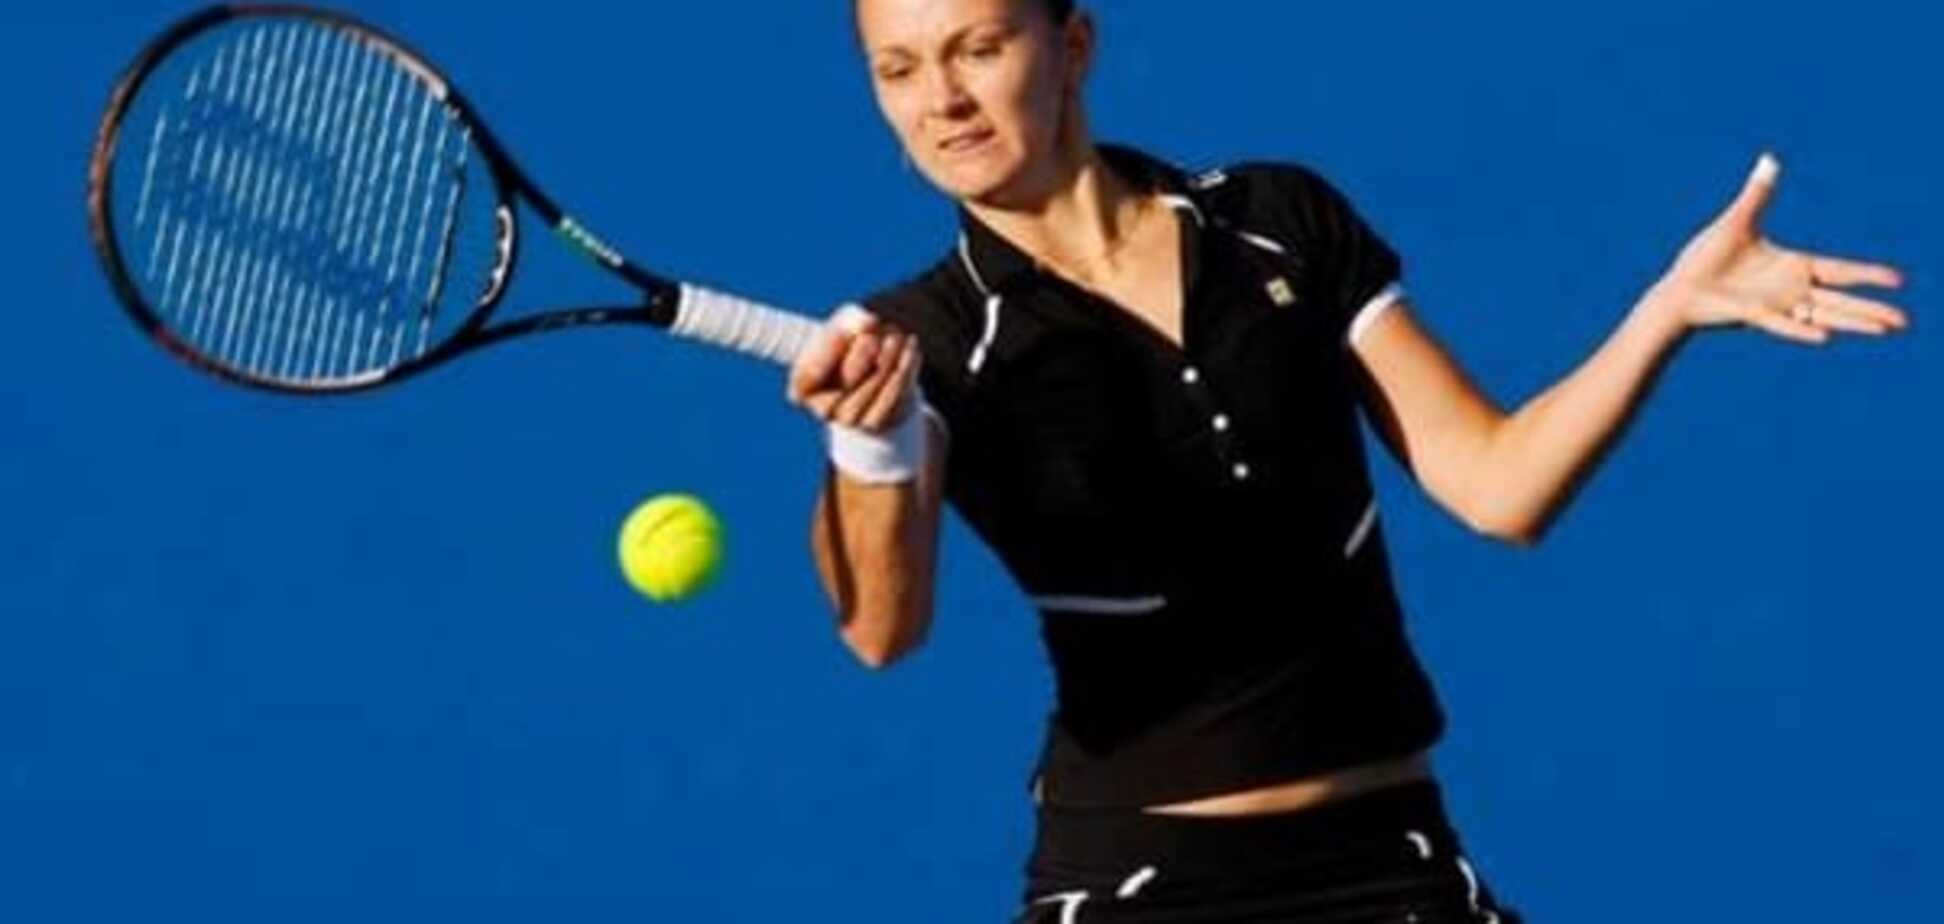 Браво! Одна з кращих тенісисток України поборола рак